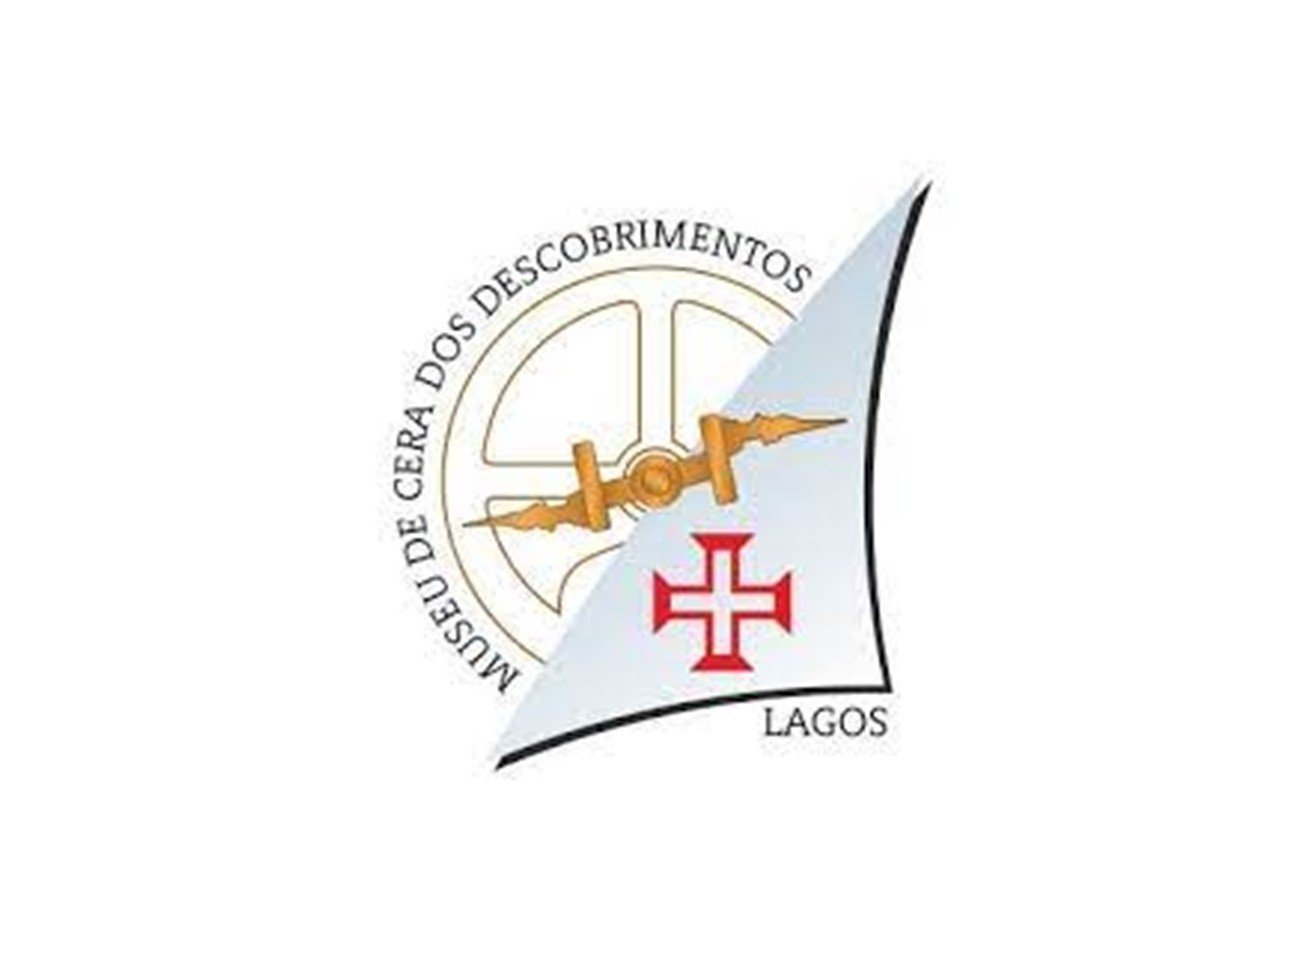 No dia em que se comemora o Dia Internacional dos Museus, o Museu de Cera dos Descobrimentos em Lagos continua encerrado